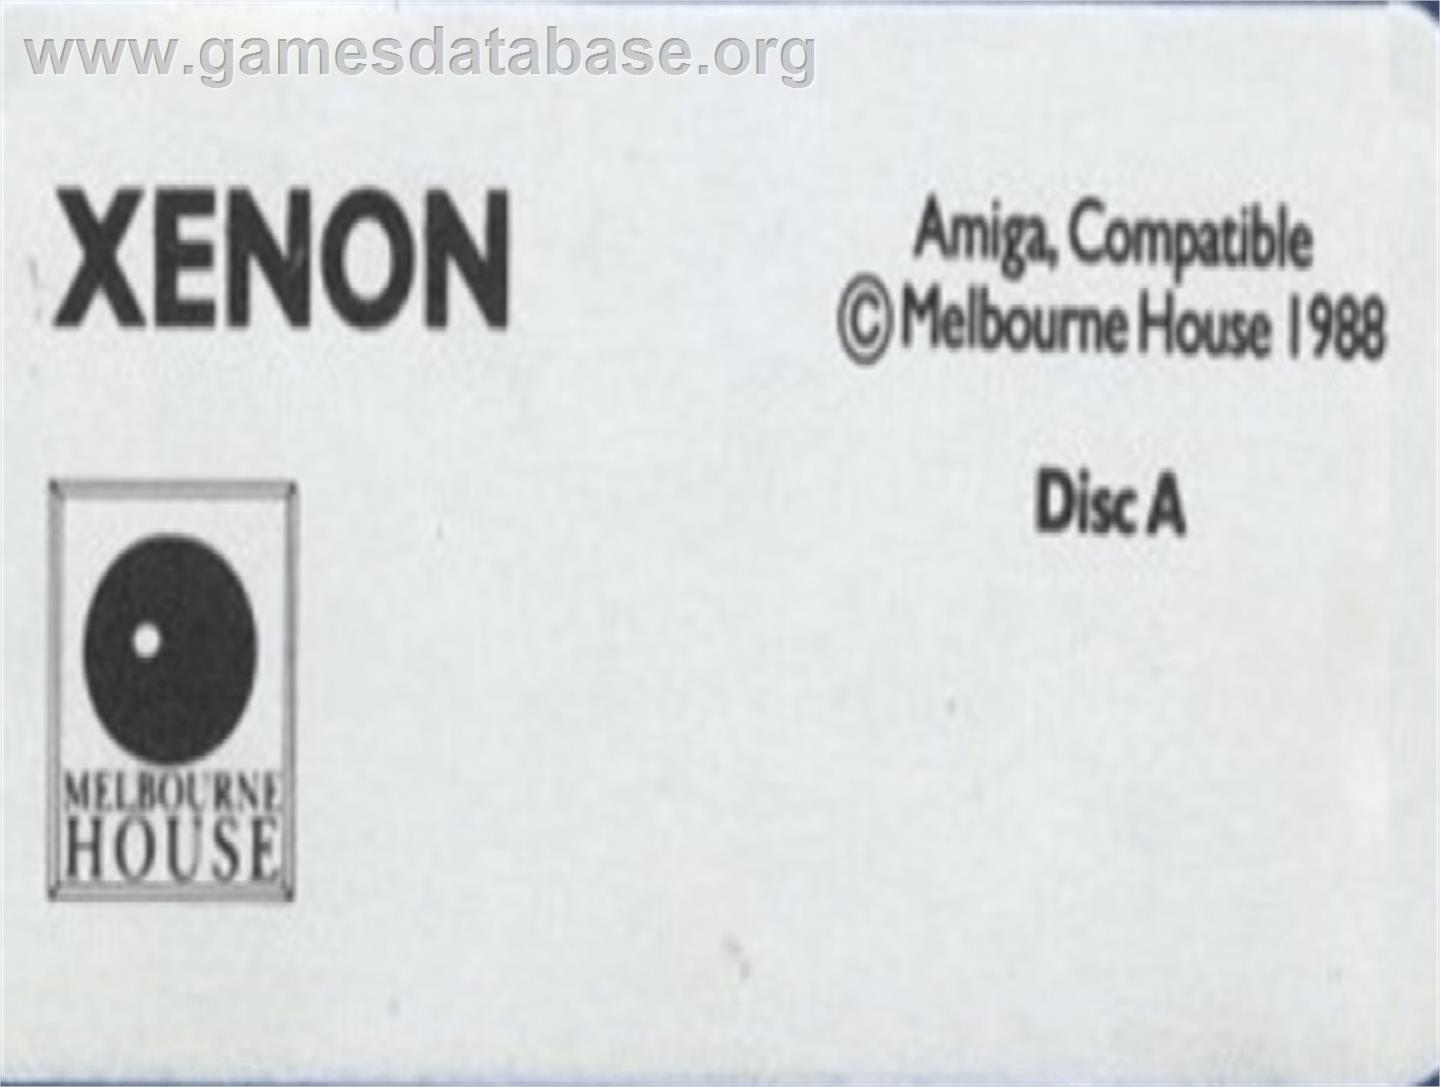 Xenon - Commodore Amiga - Artwork - Cartridge Top